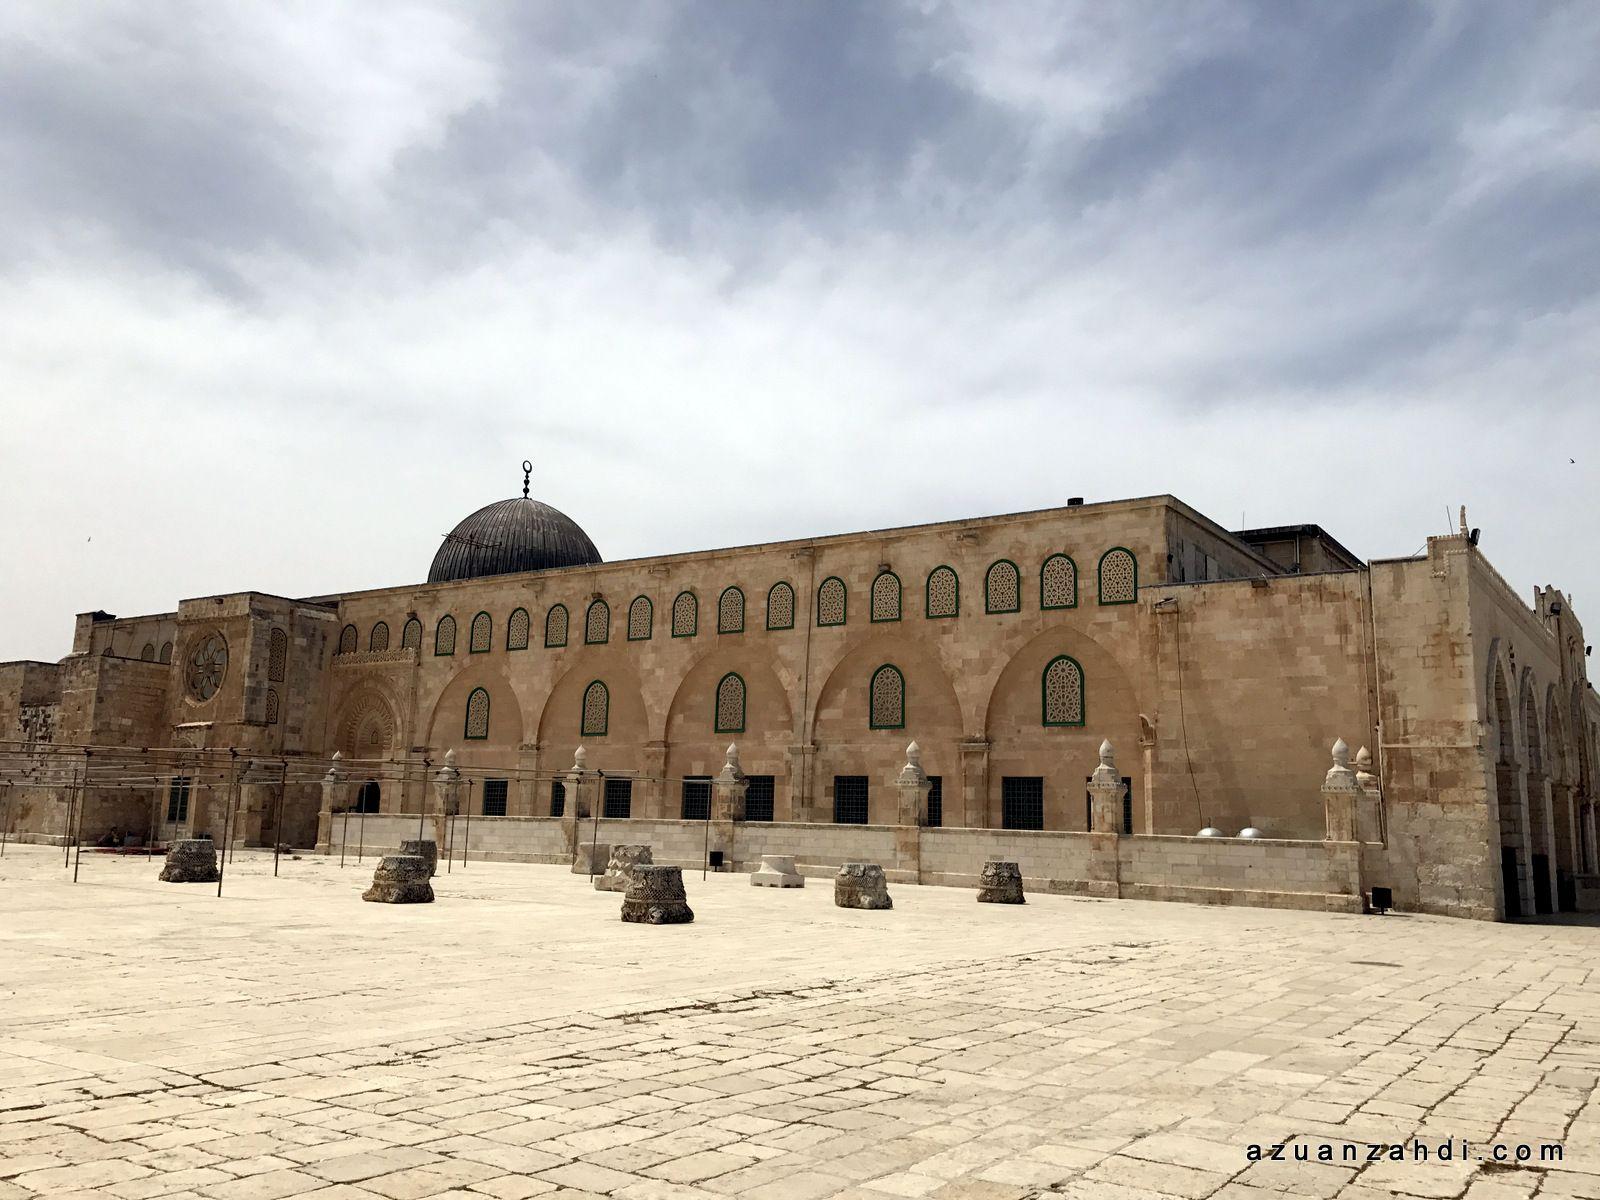 Part 3: The Beautiful Al Aqsa Mosque